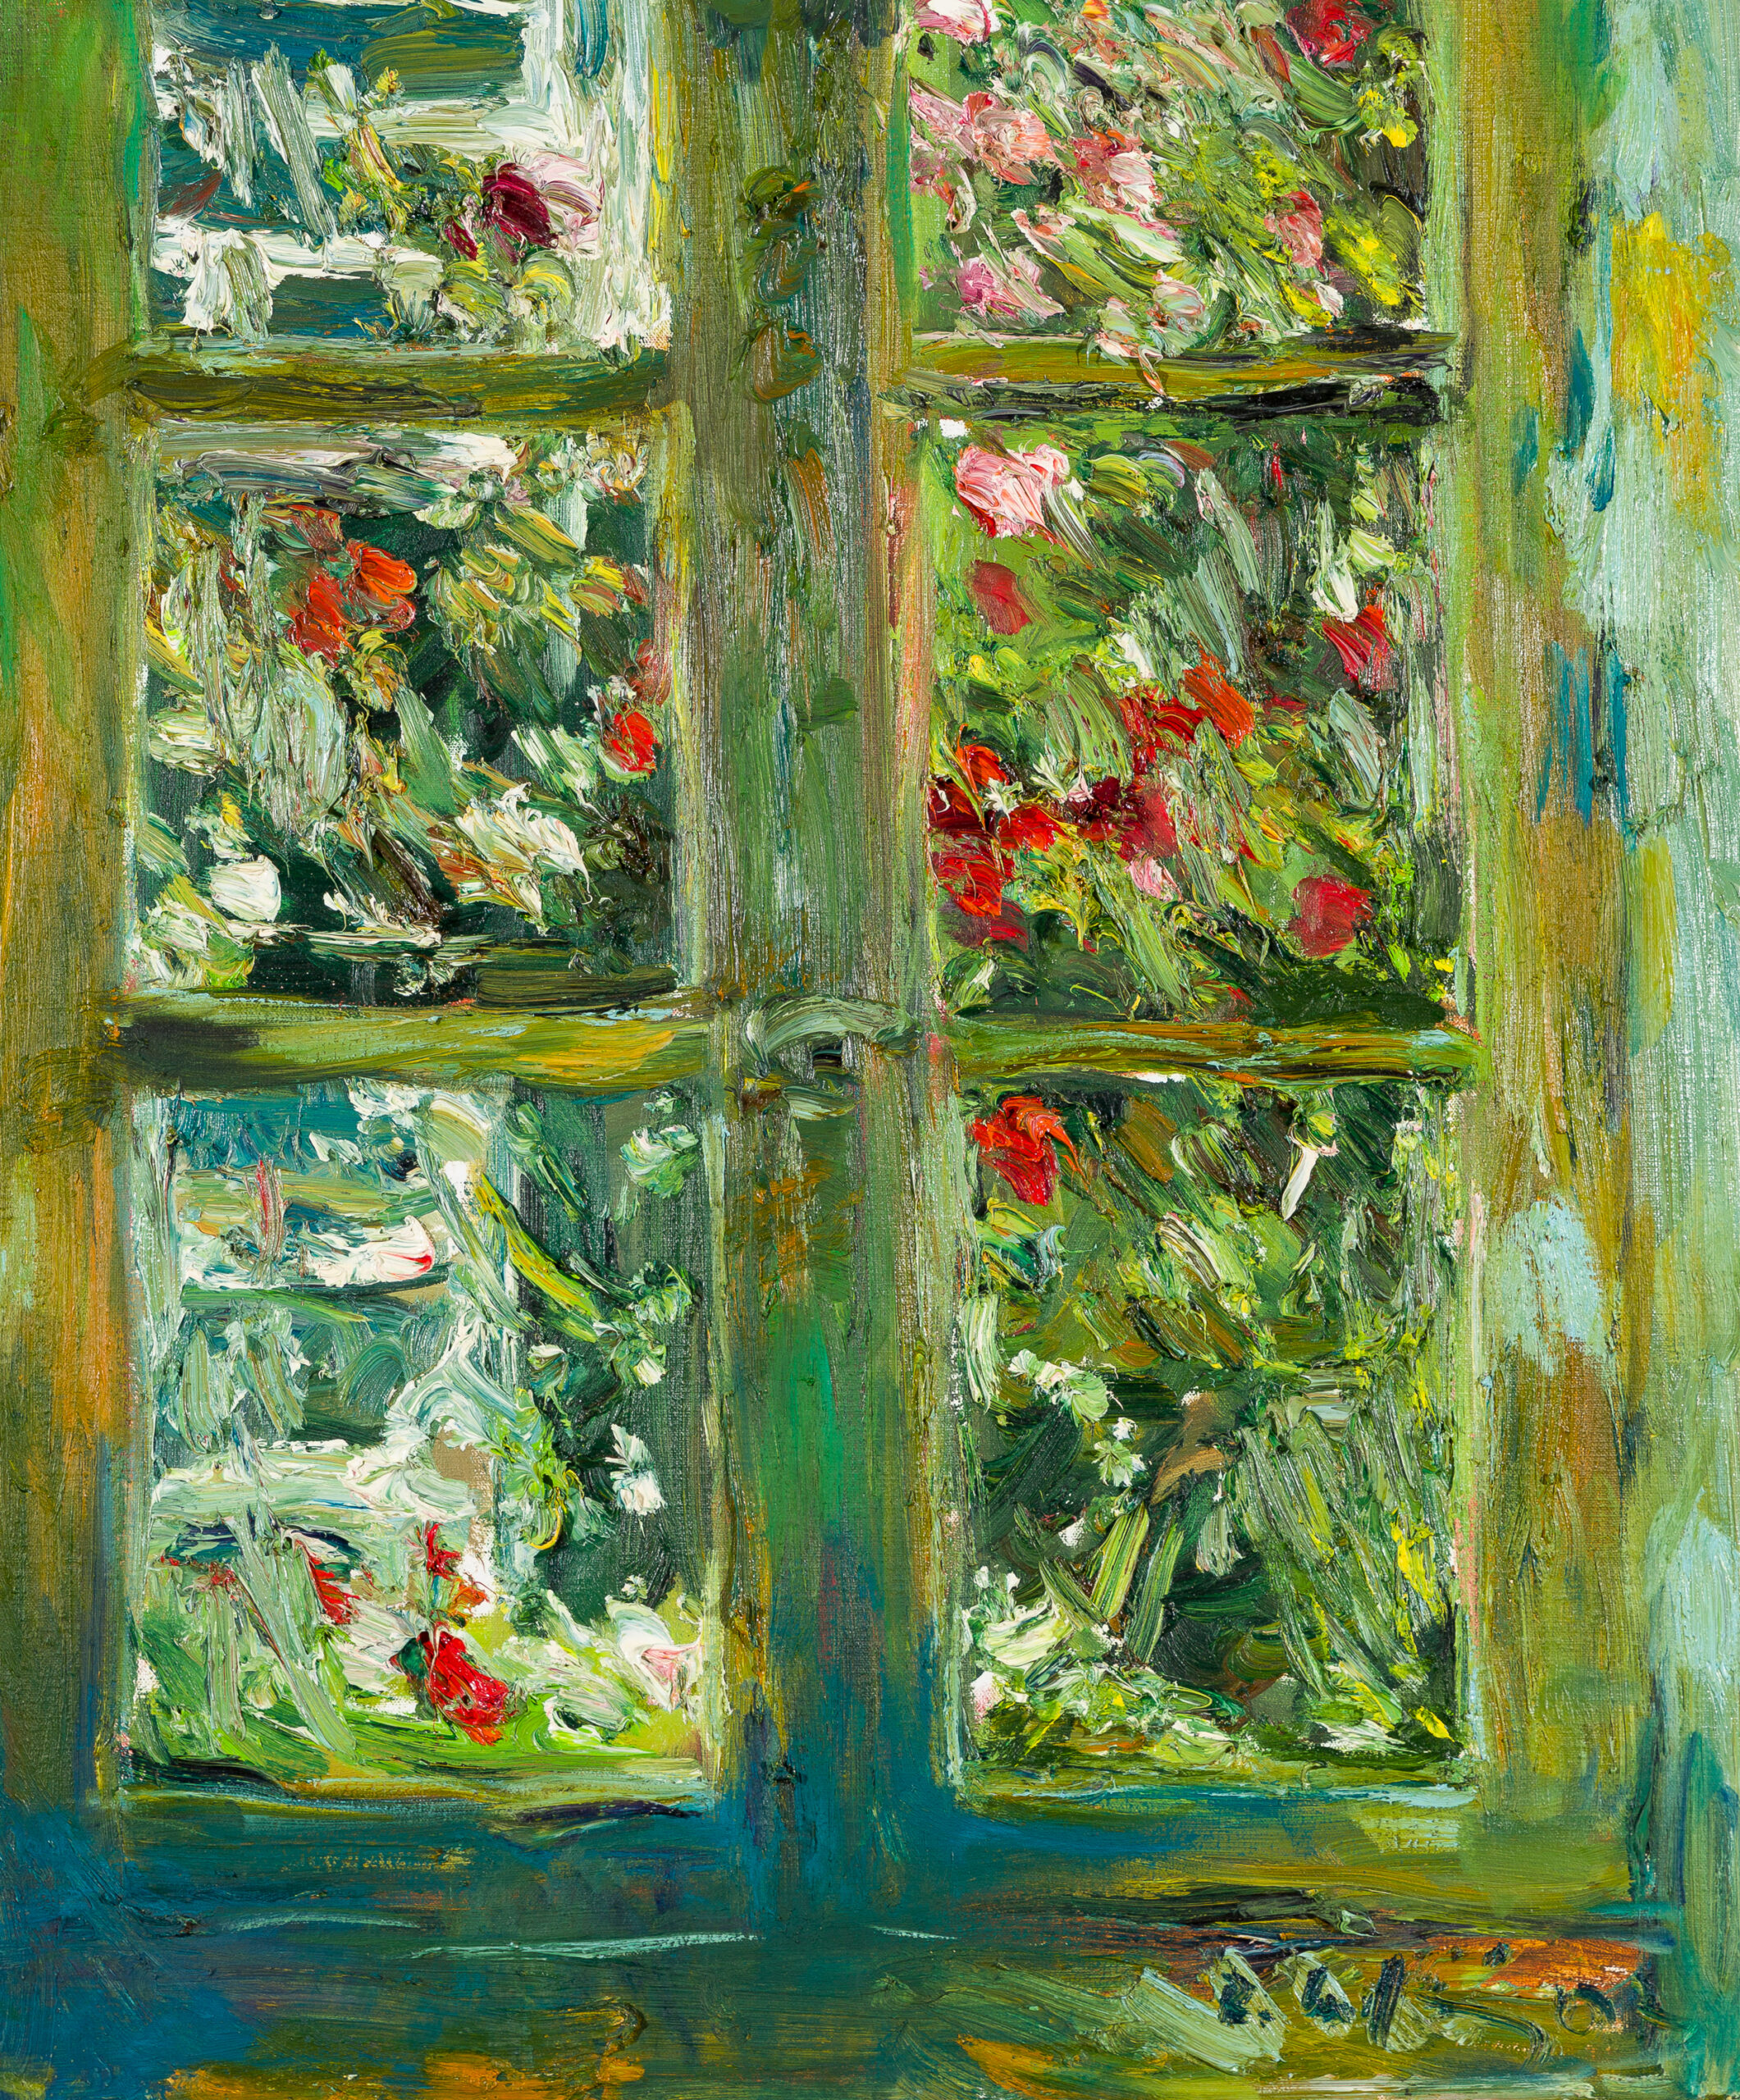 Roland Ladwig, Fenster mit Blick auf Rosenstock, 2007, 55 x 46 cm, Öl auf Leinwand
